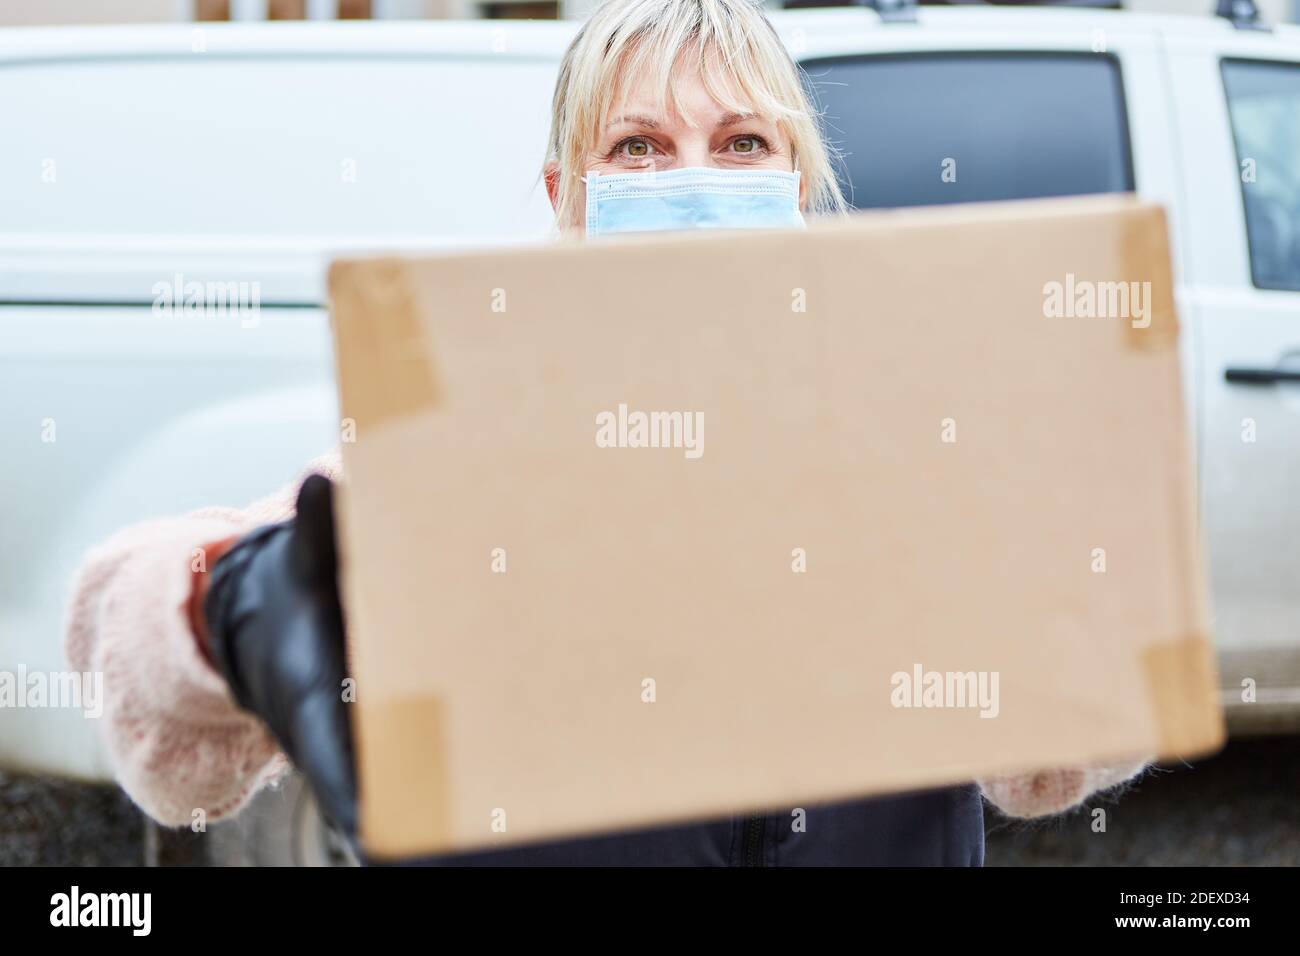 La femme de livraison de colis avec masque facial maintient la livraison de colis à caméra comme concept de livraison Banque D'Images